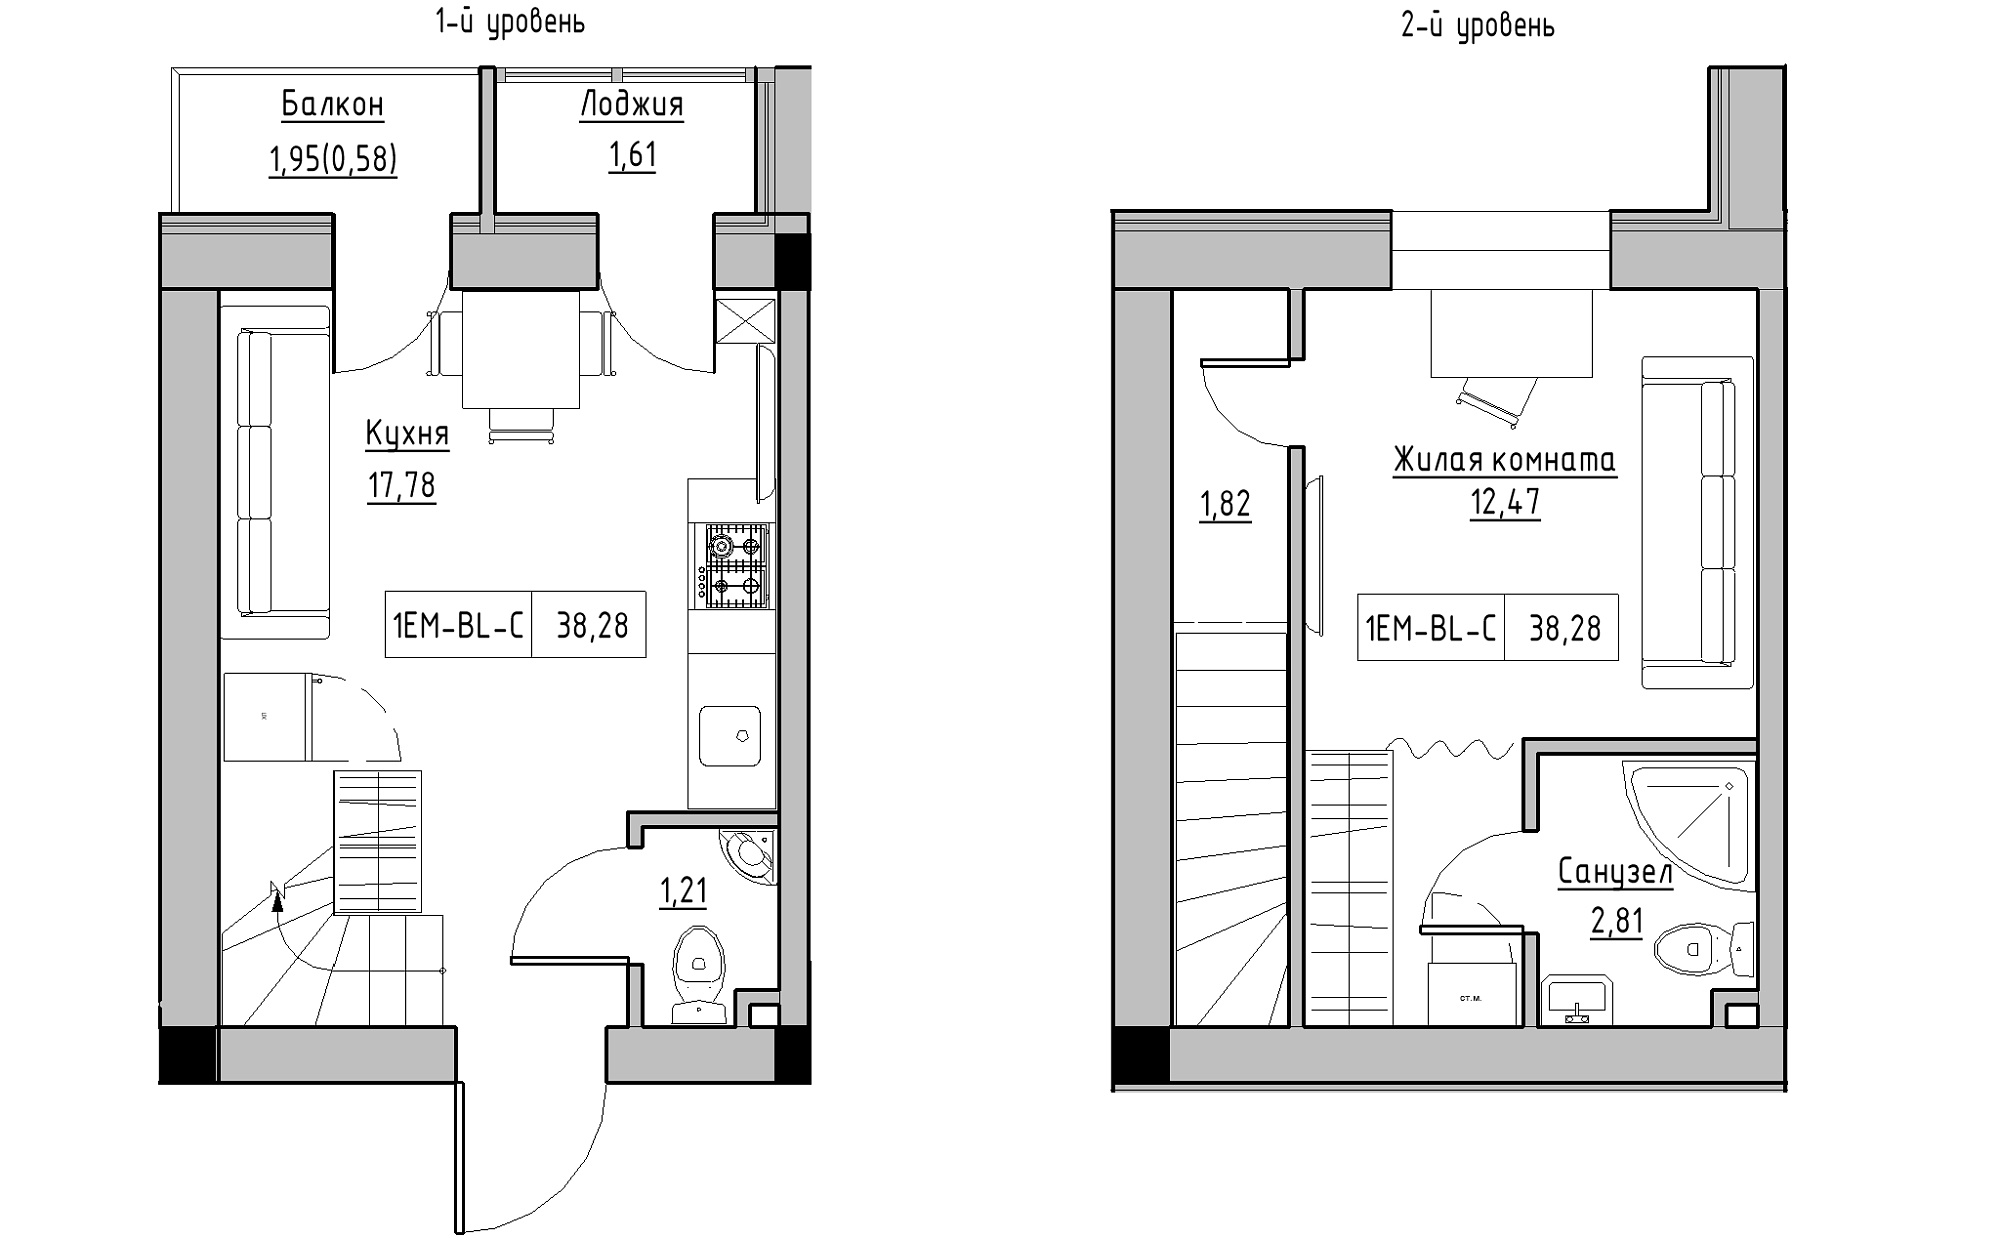 Planning 2-lvl flats area 38.28m2, KS-022-05/0005.